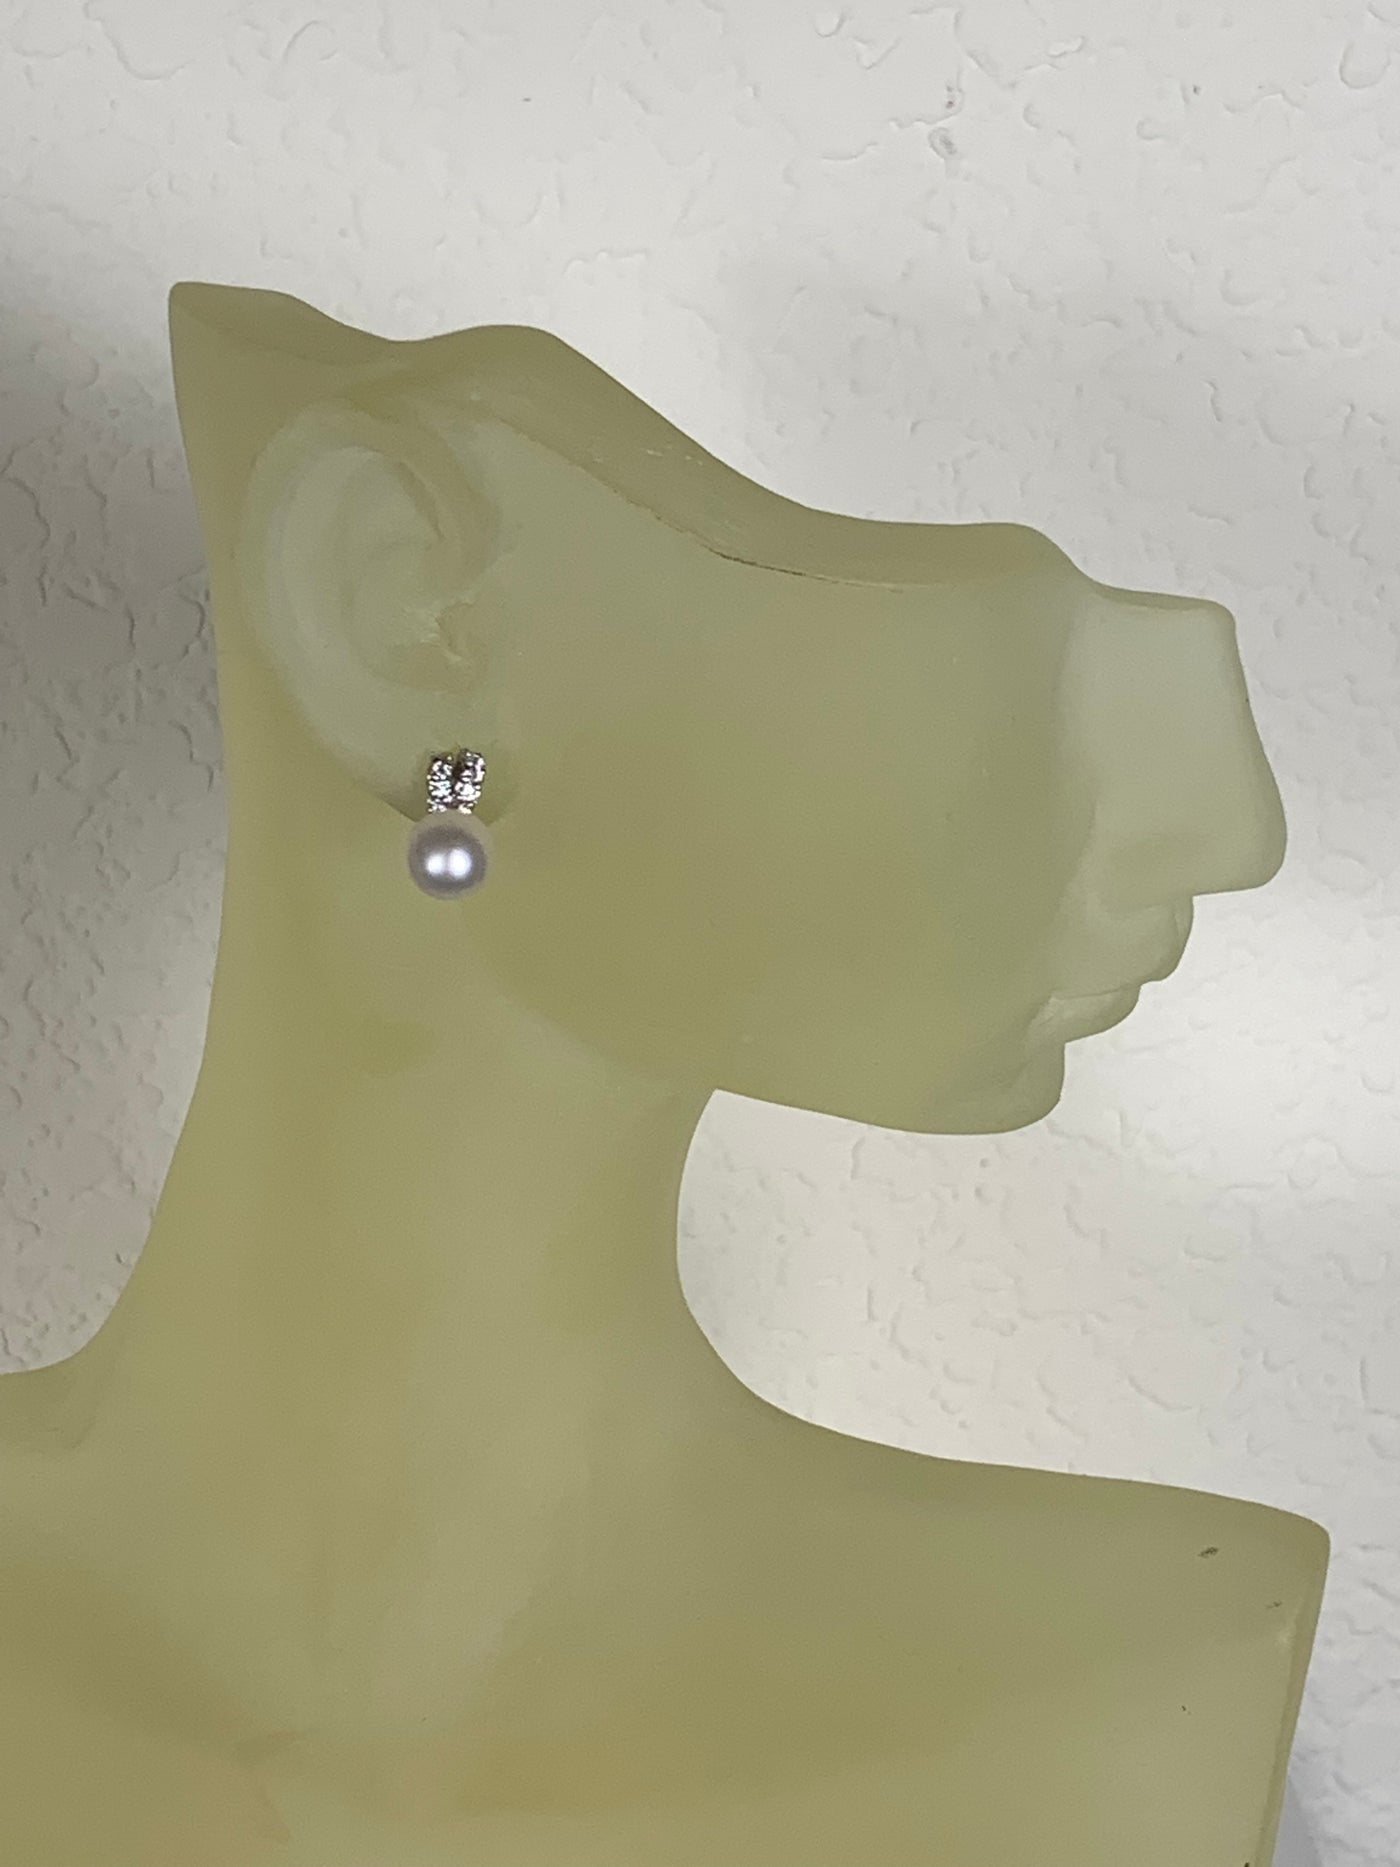 Fancy Genuine Pearl & CZs Stud Earrings in Sterling Silver